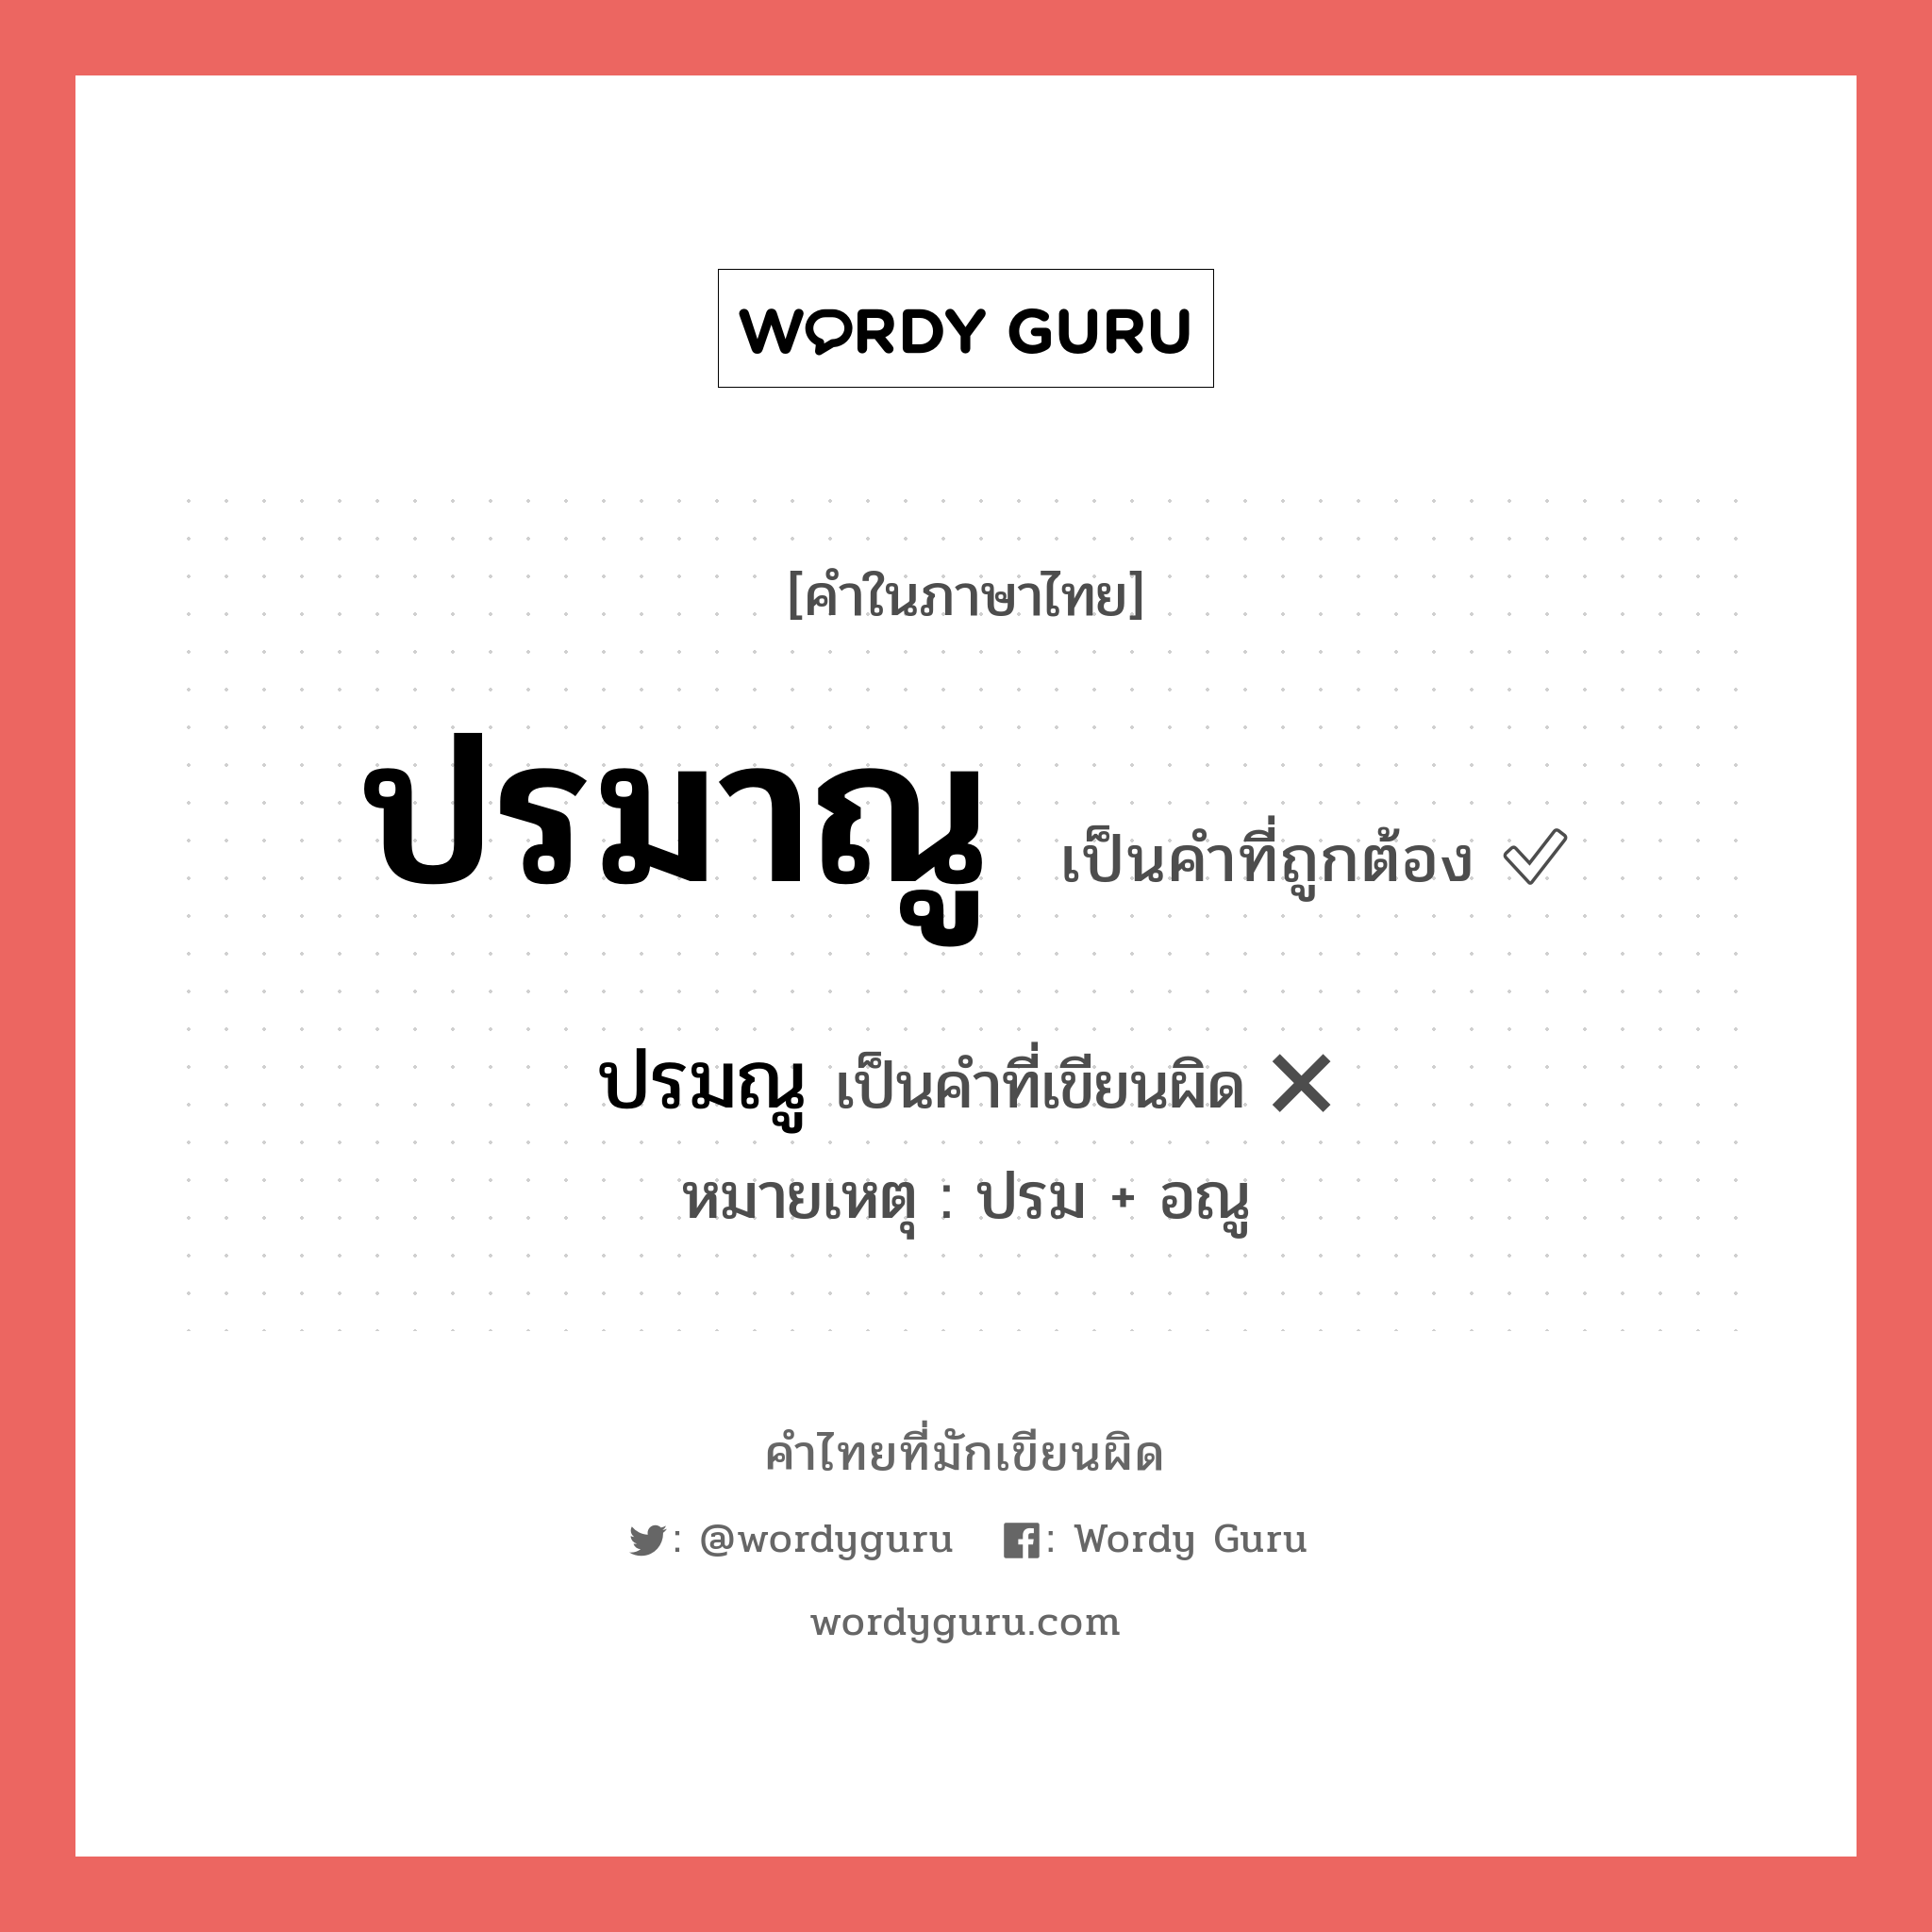 ปรมณู หรือ ปรมาณู คำไหนเขียนถูก?, คำในภาษาไทยที่มักเขียนผิด ปรมณู คำที่ผิด ❌ ปรมาณู หมายเหตุ ปรม + อณู